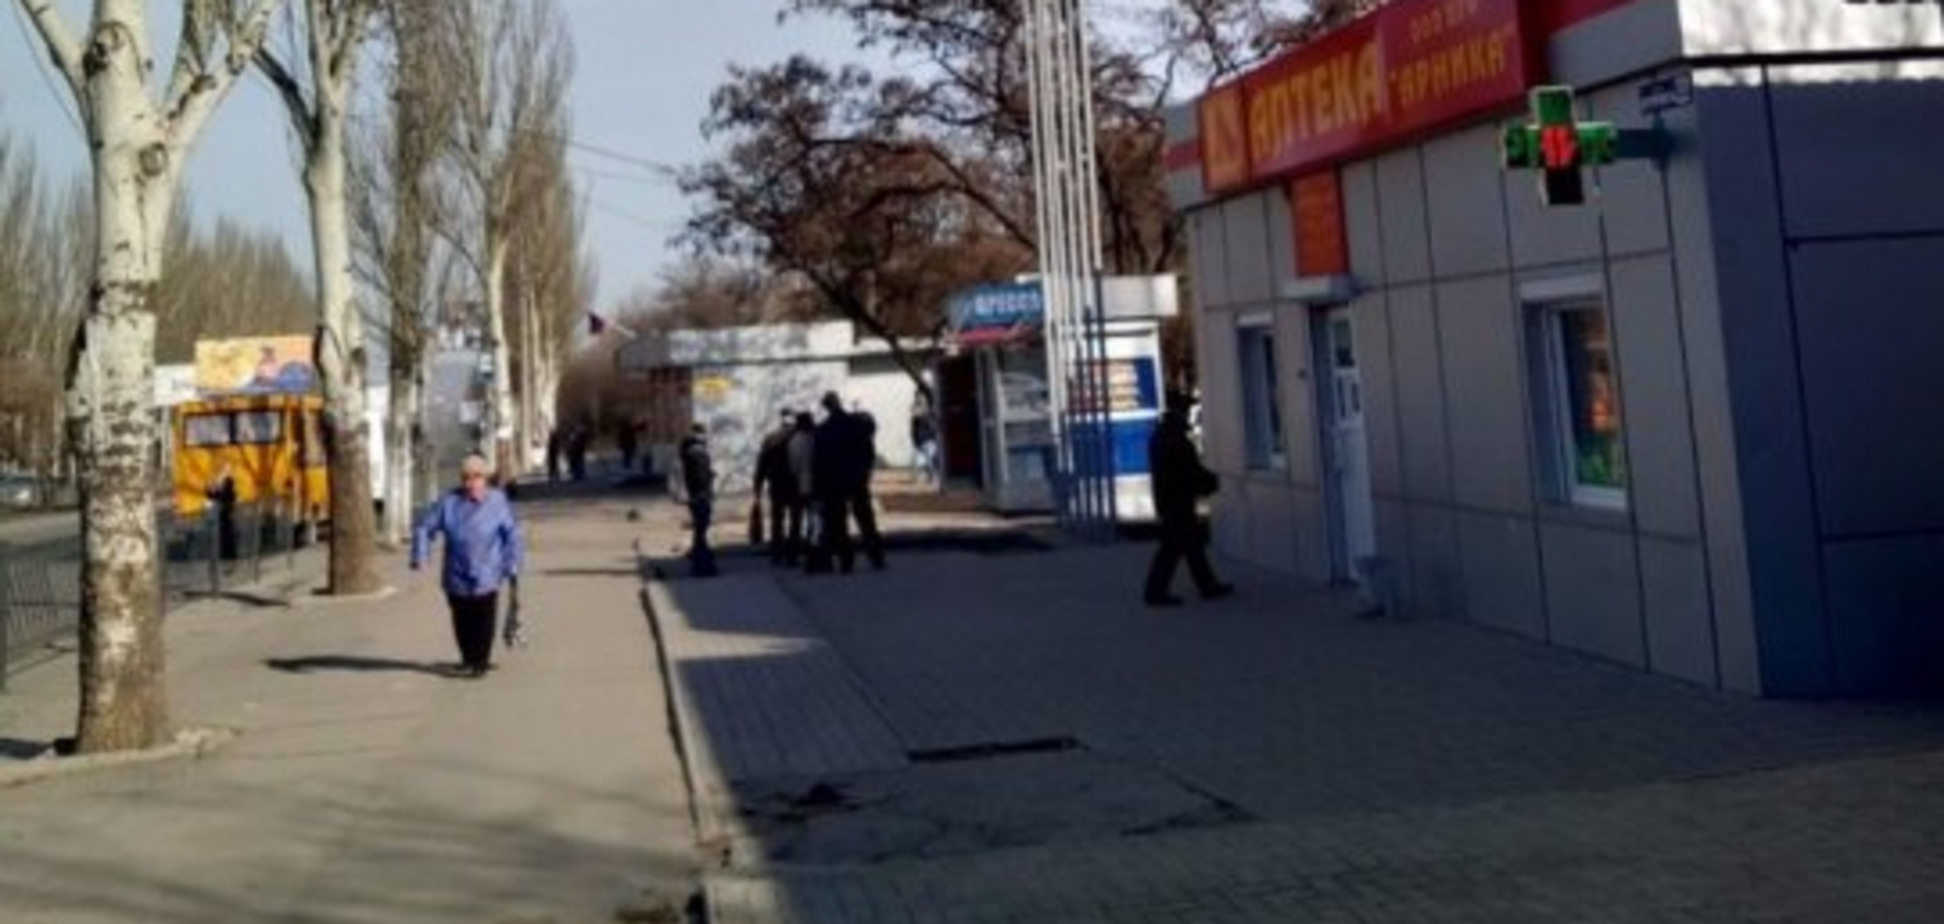 ‏'У орк*в истерика!' В Донецке поднялась паника из-за символа Украины 